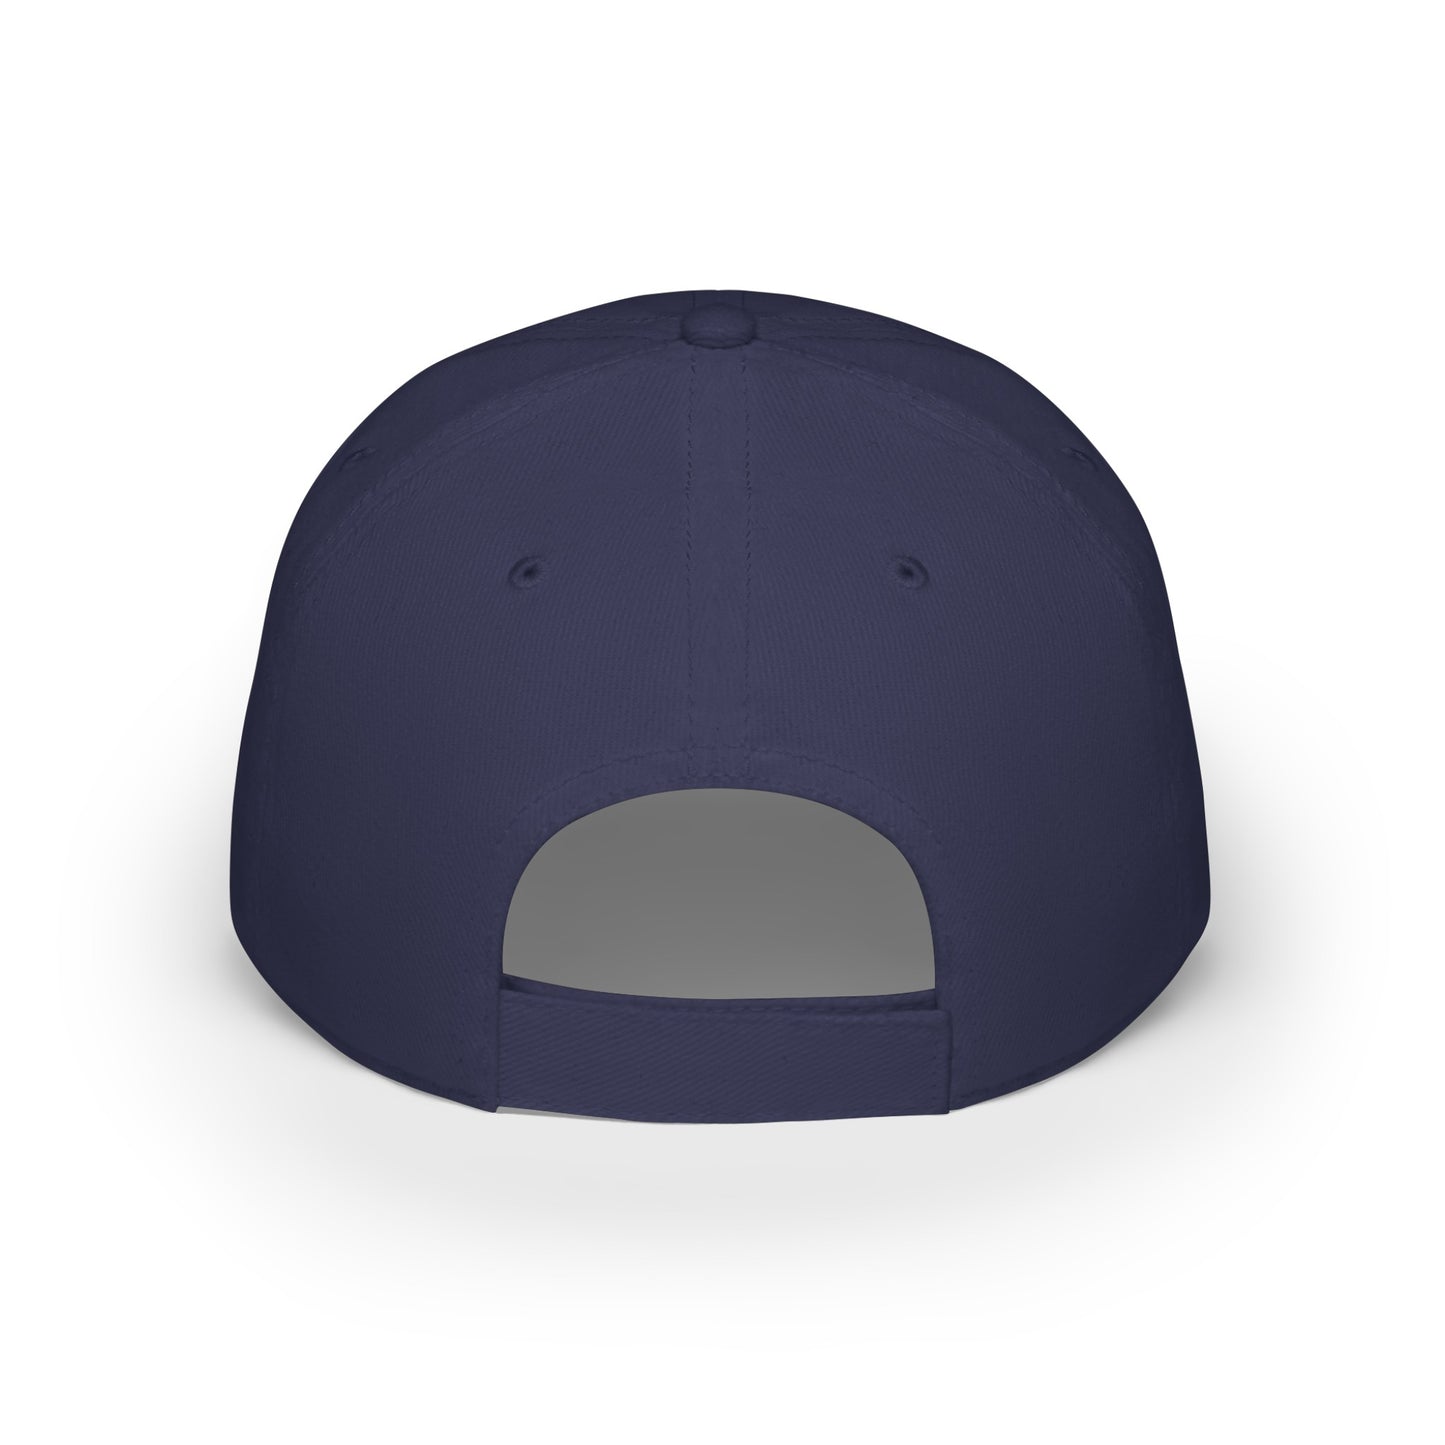 MDBTDJ#WBLUGC - Low Profile Baseball Cap Tattooed Dj's Limited Edition, Hats, Tattooed Djs Shop